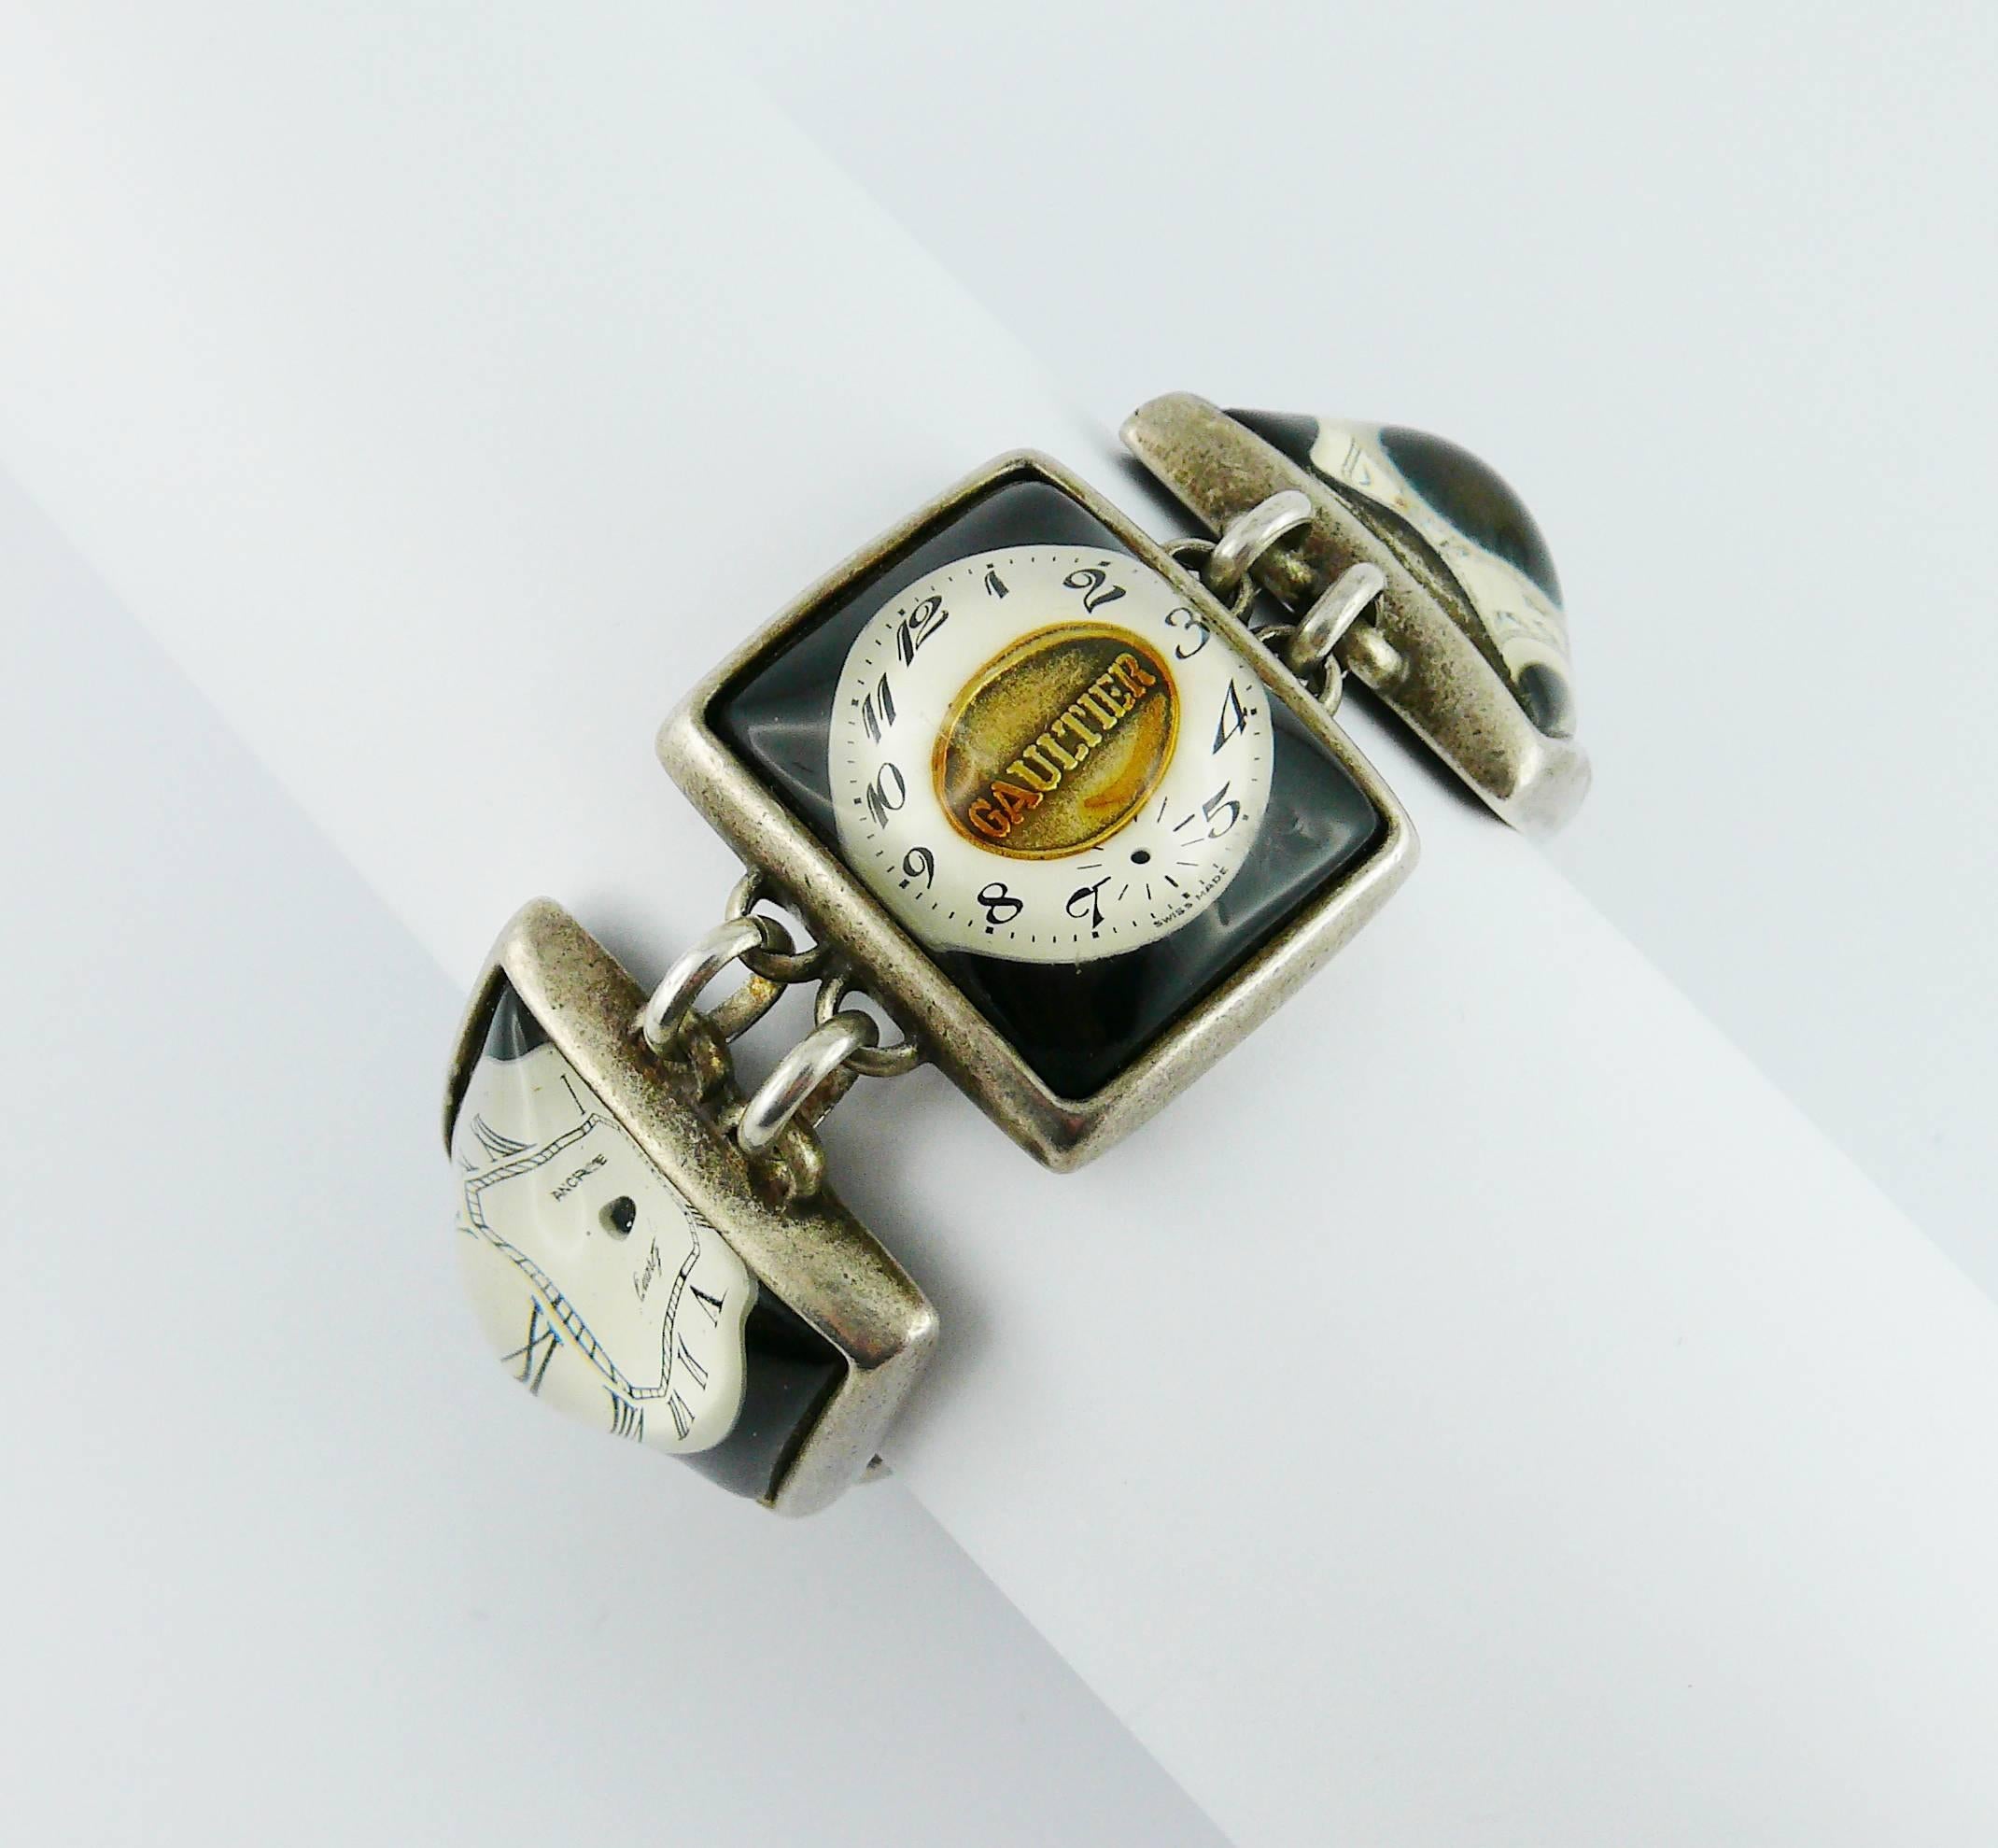 JEAN PAUL GAULTIER bracelet de montre vintage rare et de collection.

Maillons de couleur argentée avec patine présentant des cadrans de montre rectangulaires dans un dôme en résine transparente incrustée.

Marqué GAULTIER.

Mesures indicatives :